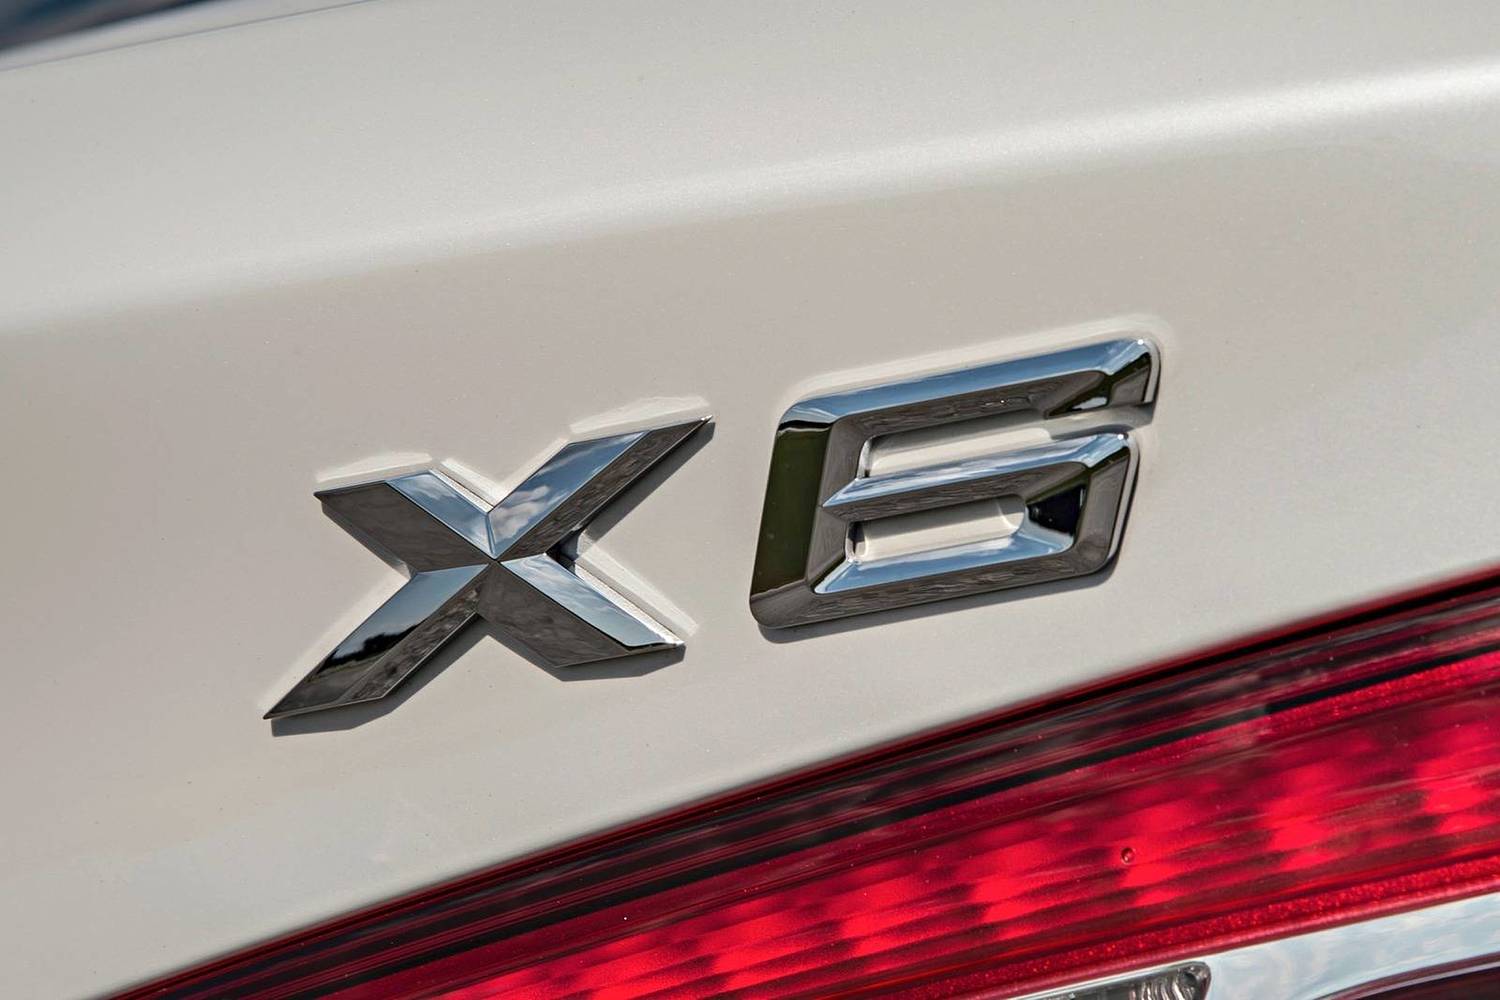 BMW X6 xDrive50i 4dr SUV Rear Badge (2016 model year shown)